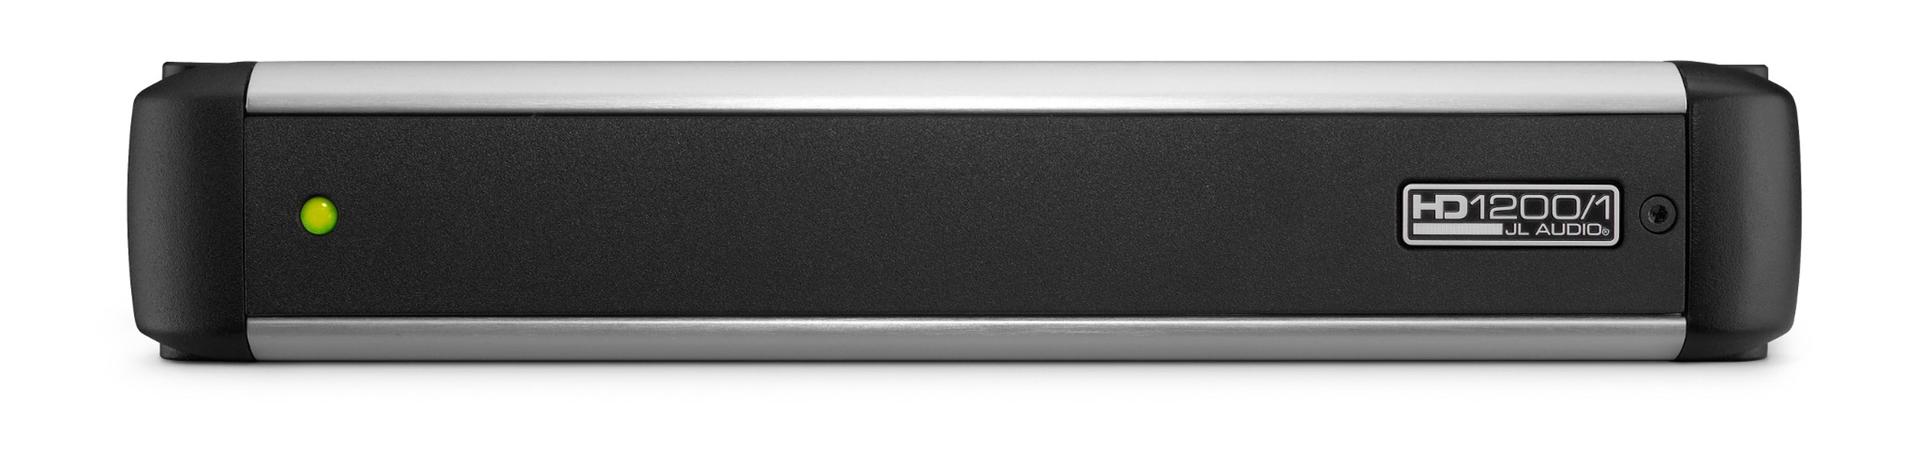 JL Audio HD1200/1 Monoblock Class D Wide-Range Amplifier, 1200 W (HD12001)